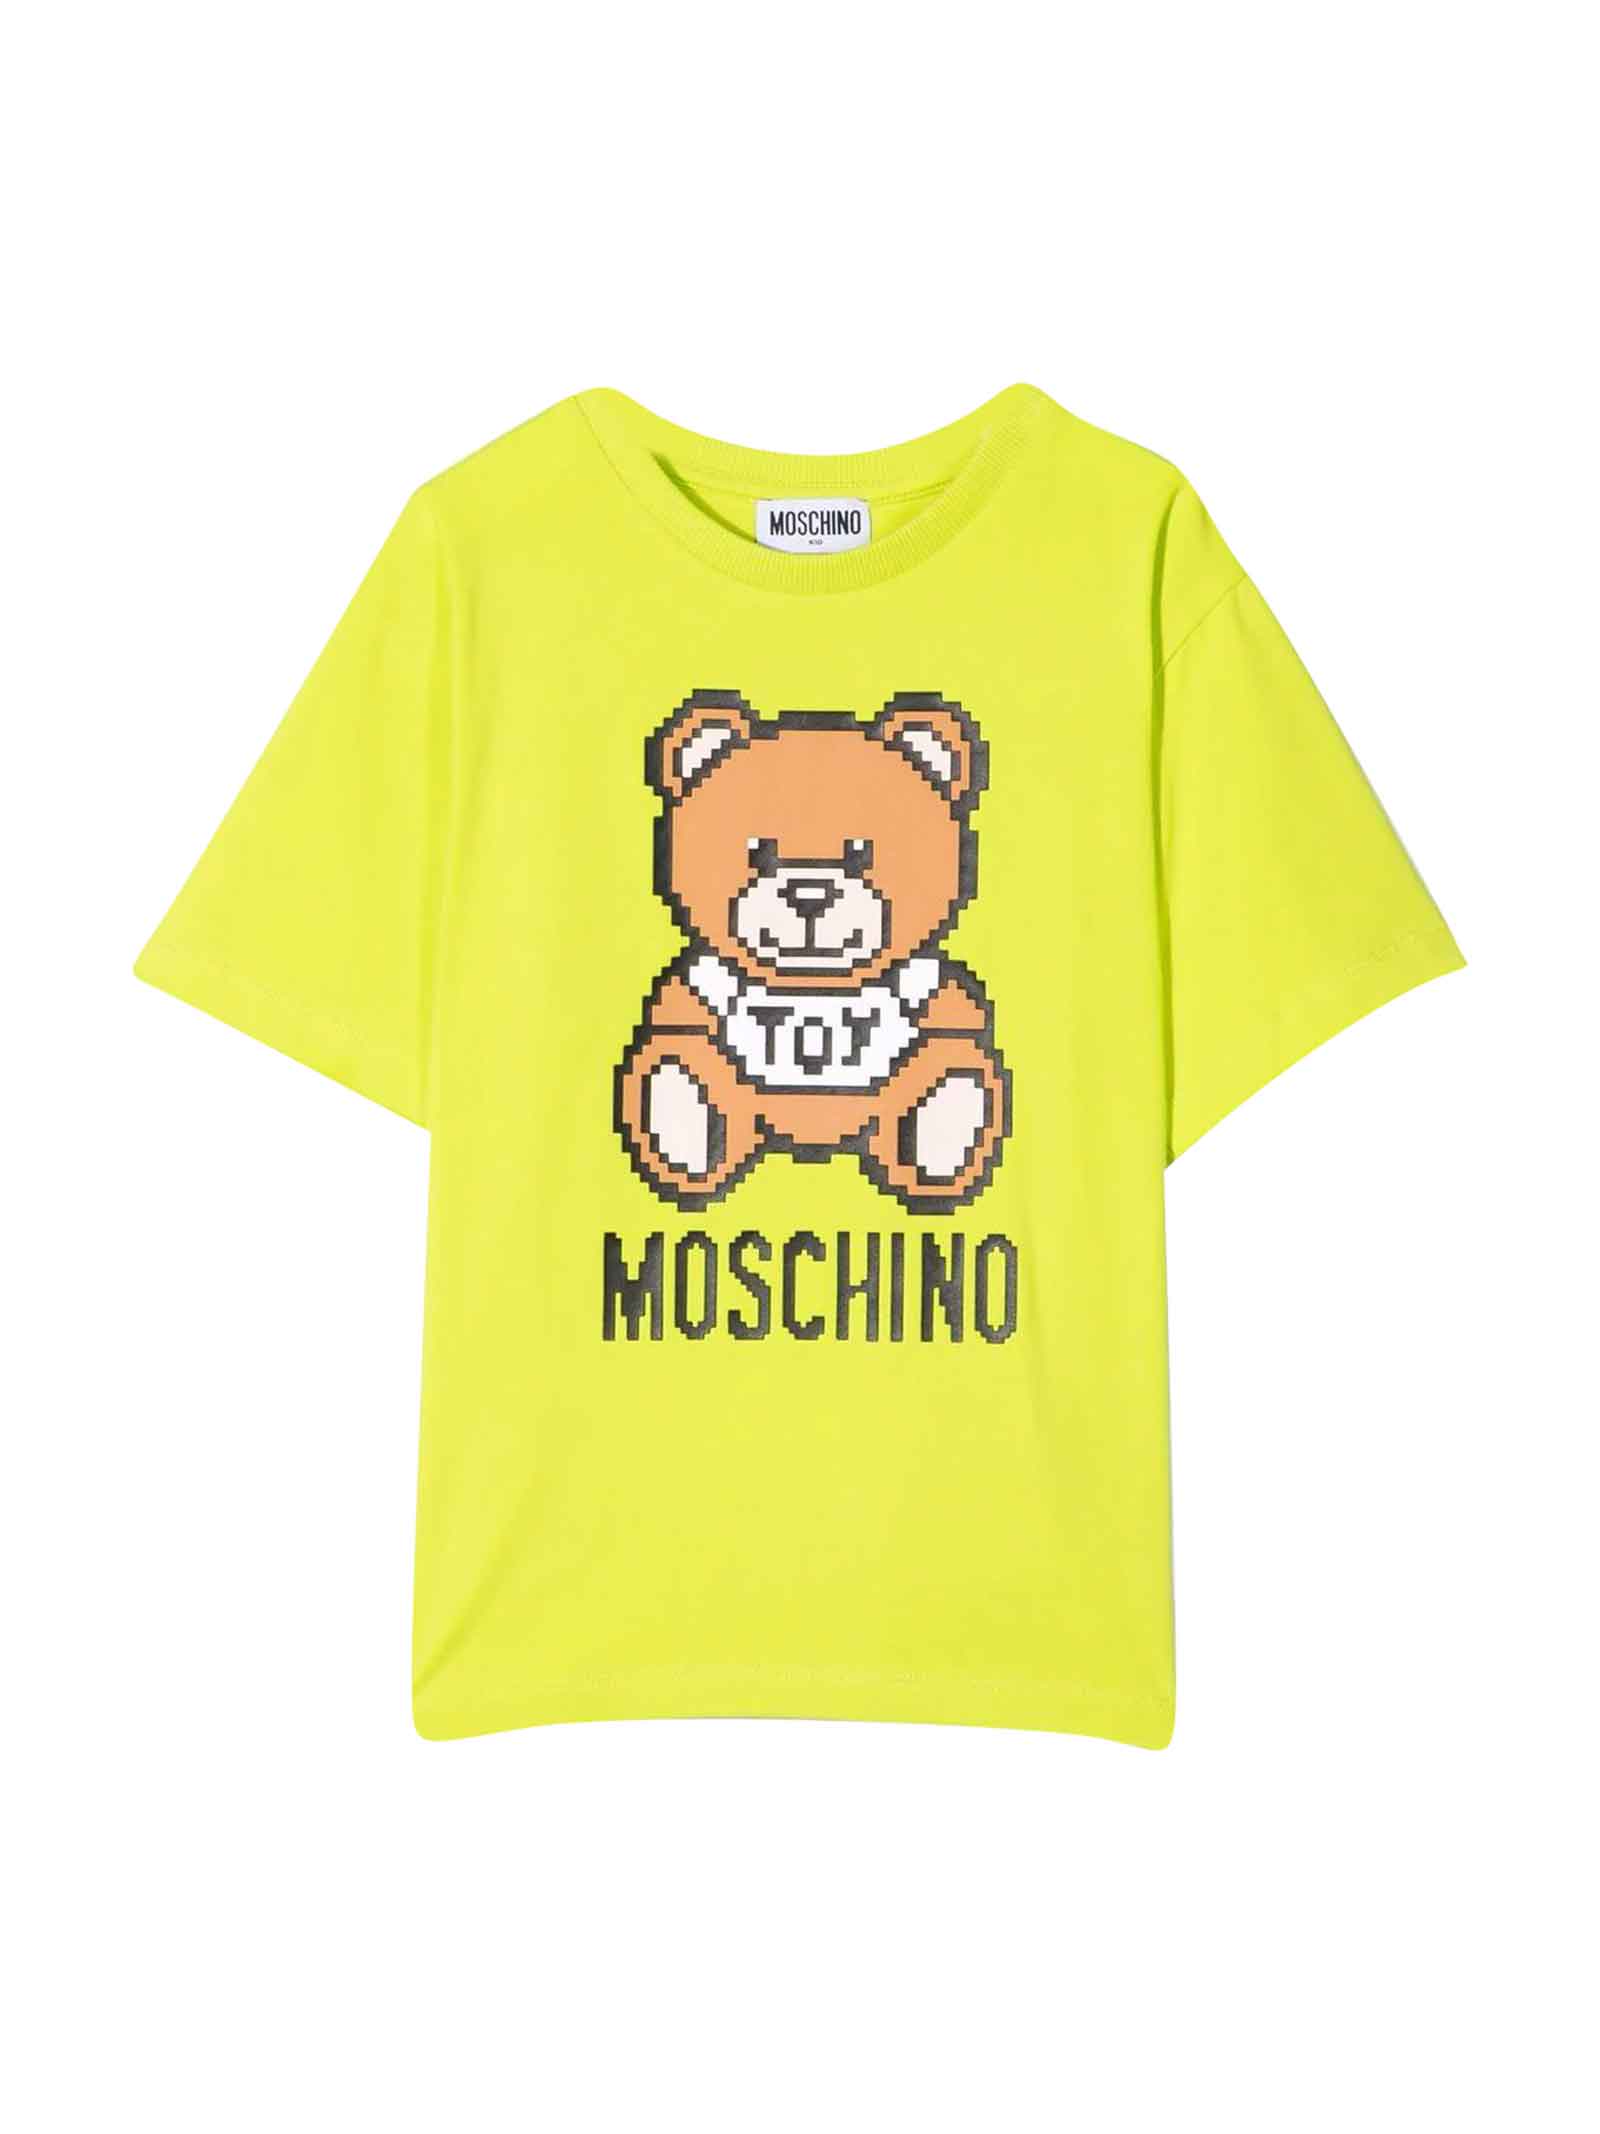 Moschino Unisex Yellow T-shirt